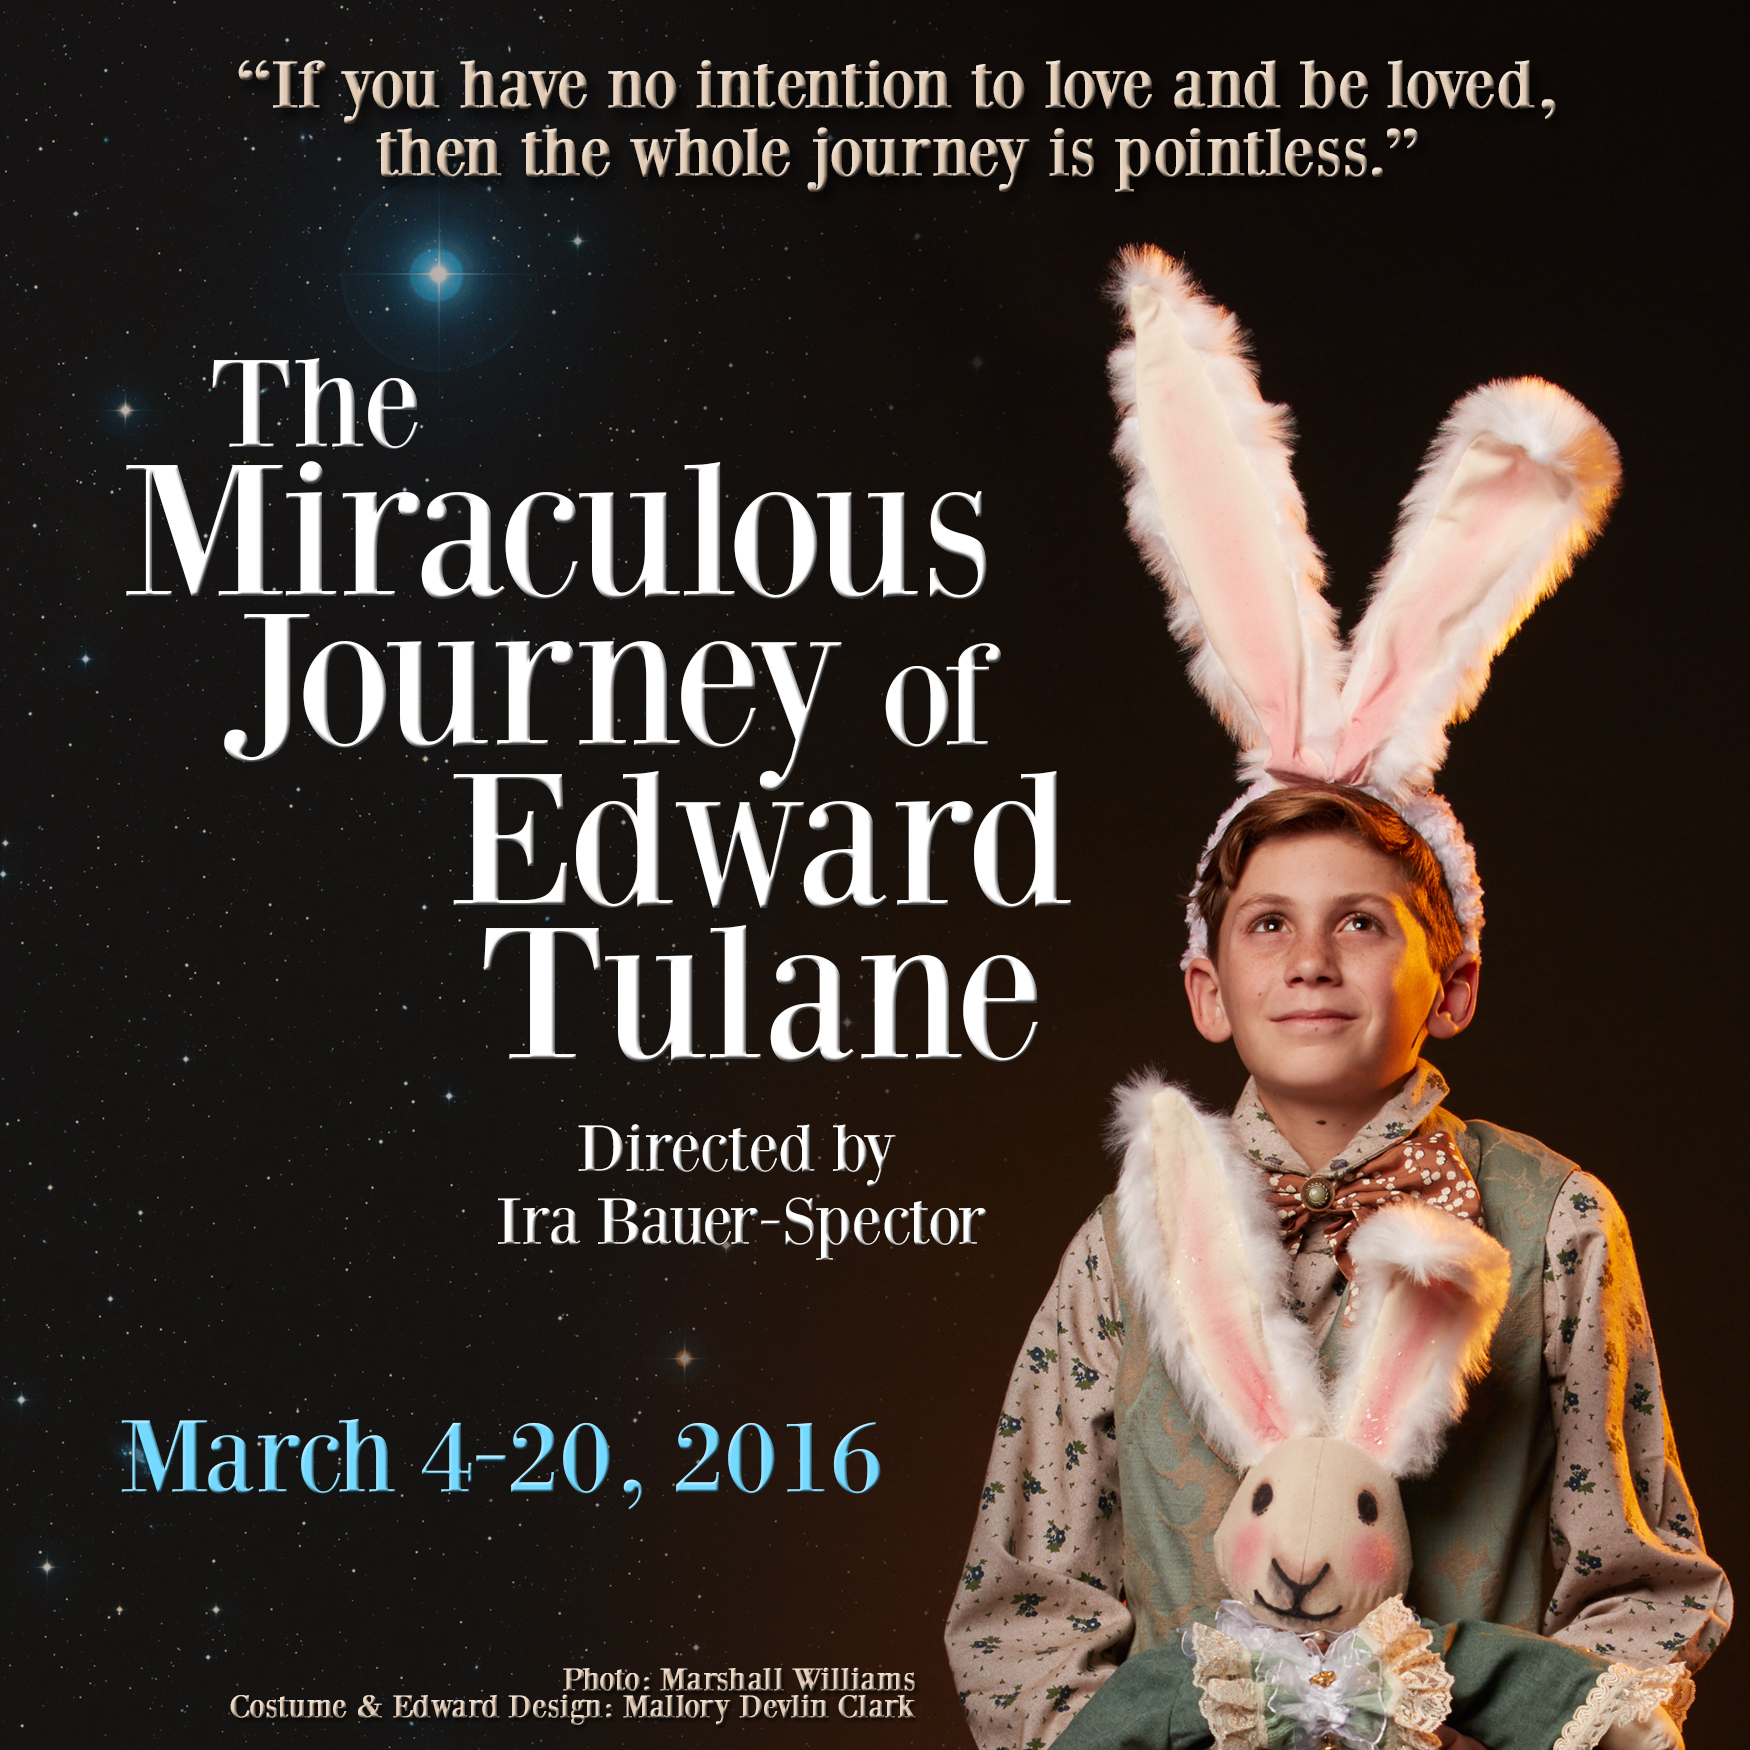 magical journey of edward tulane